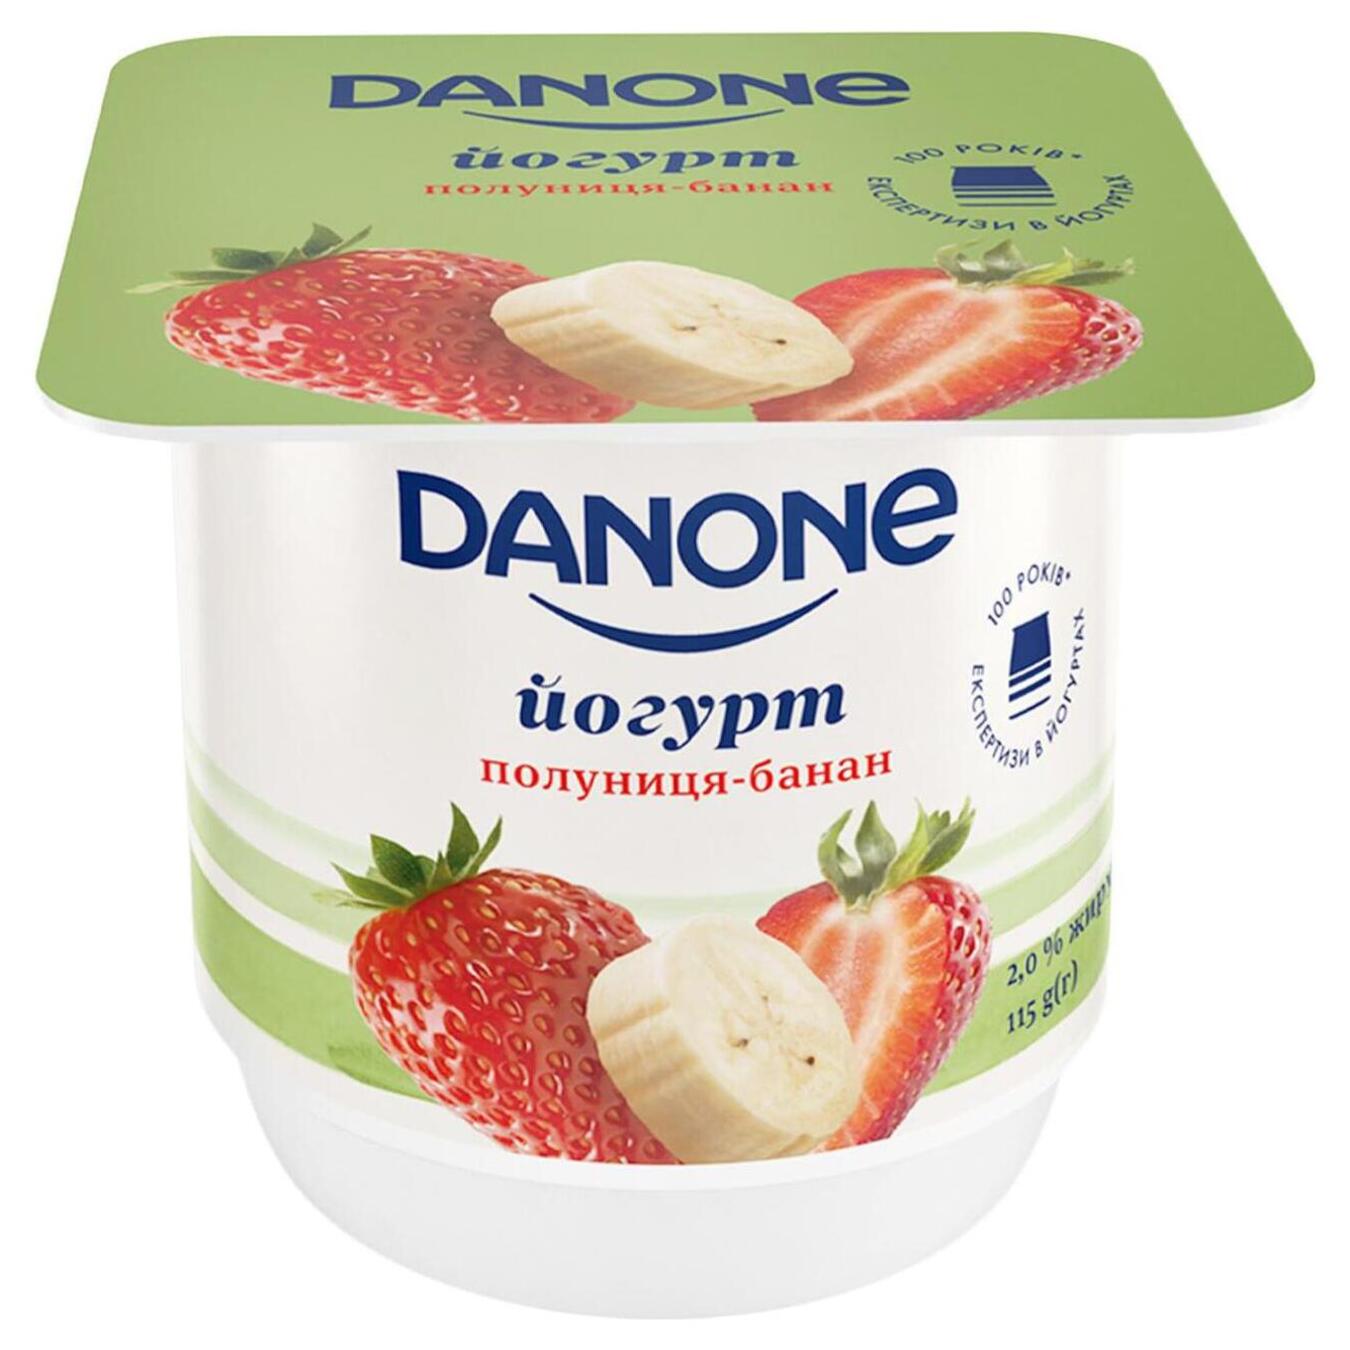 Yogurt Danone strawberry-banana cup 2% 115g